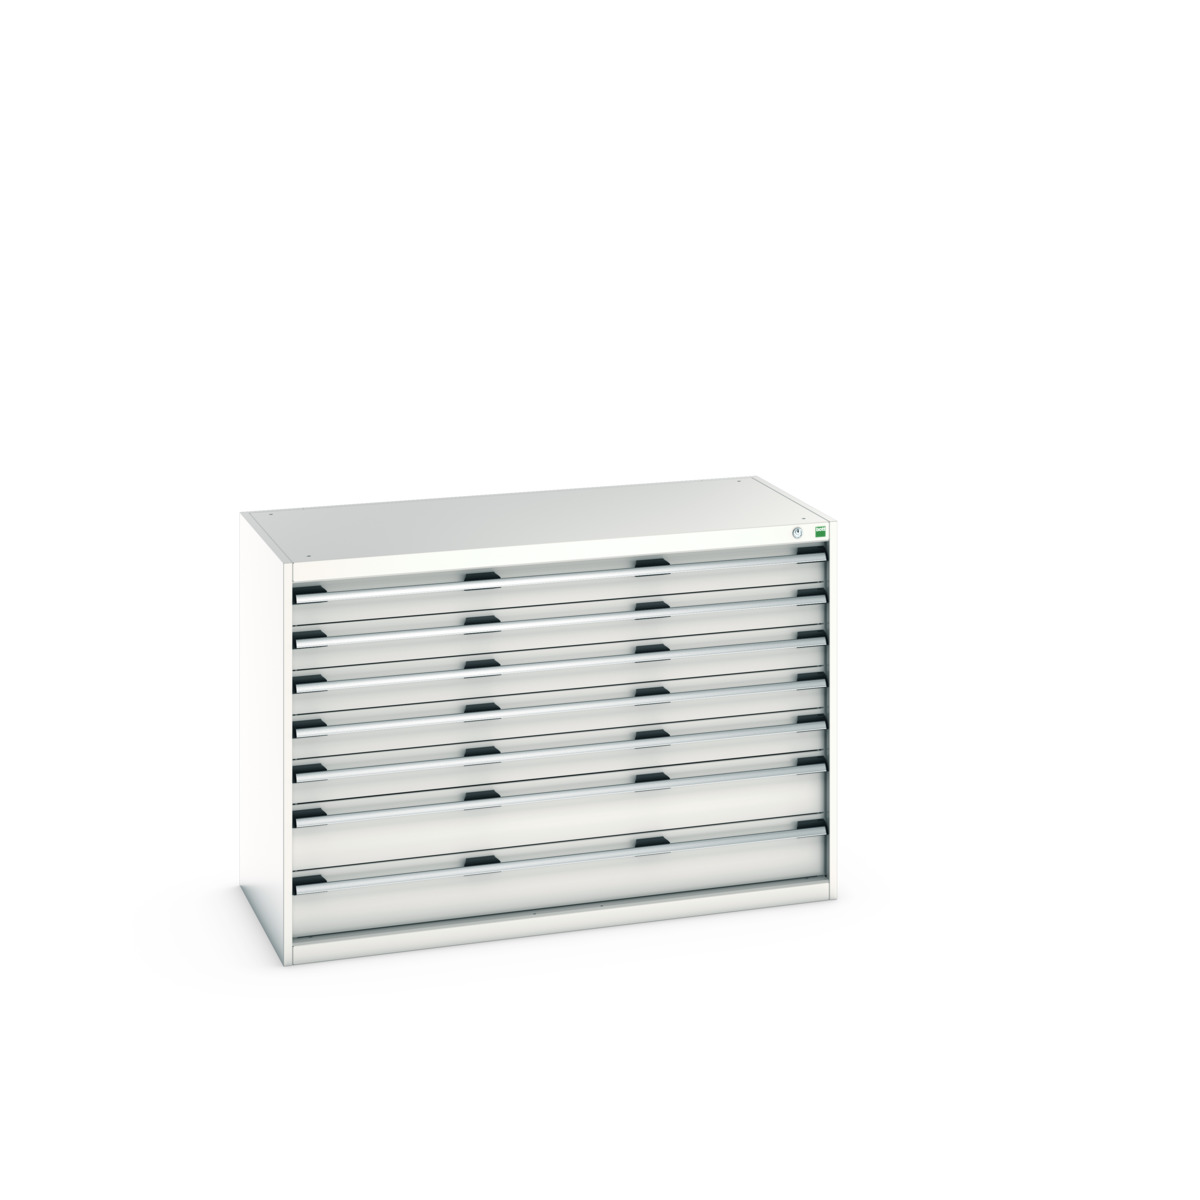 40022118.16V - cubio drawer cabinet